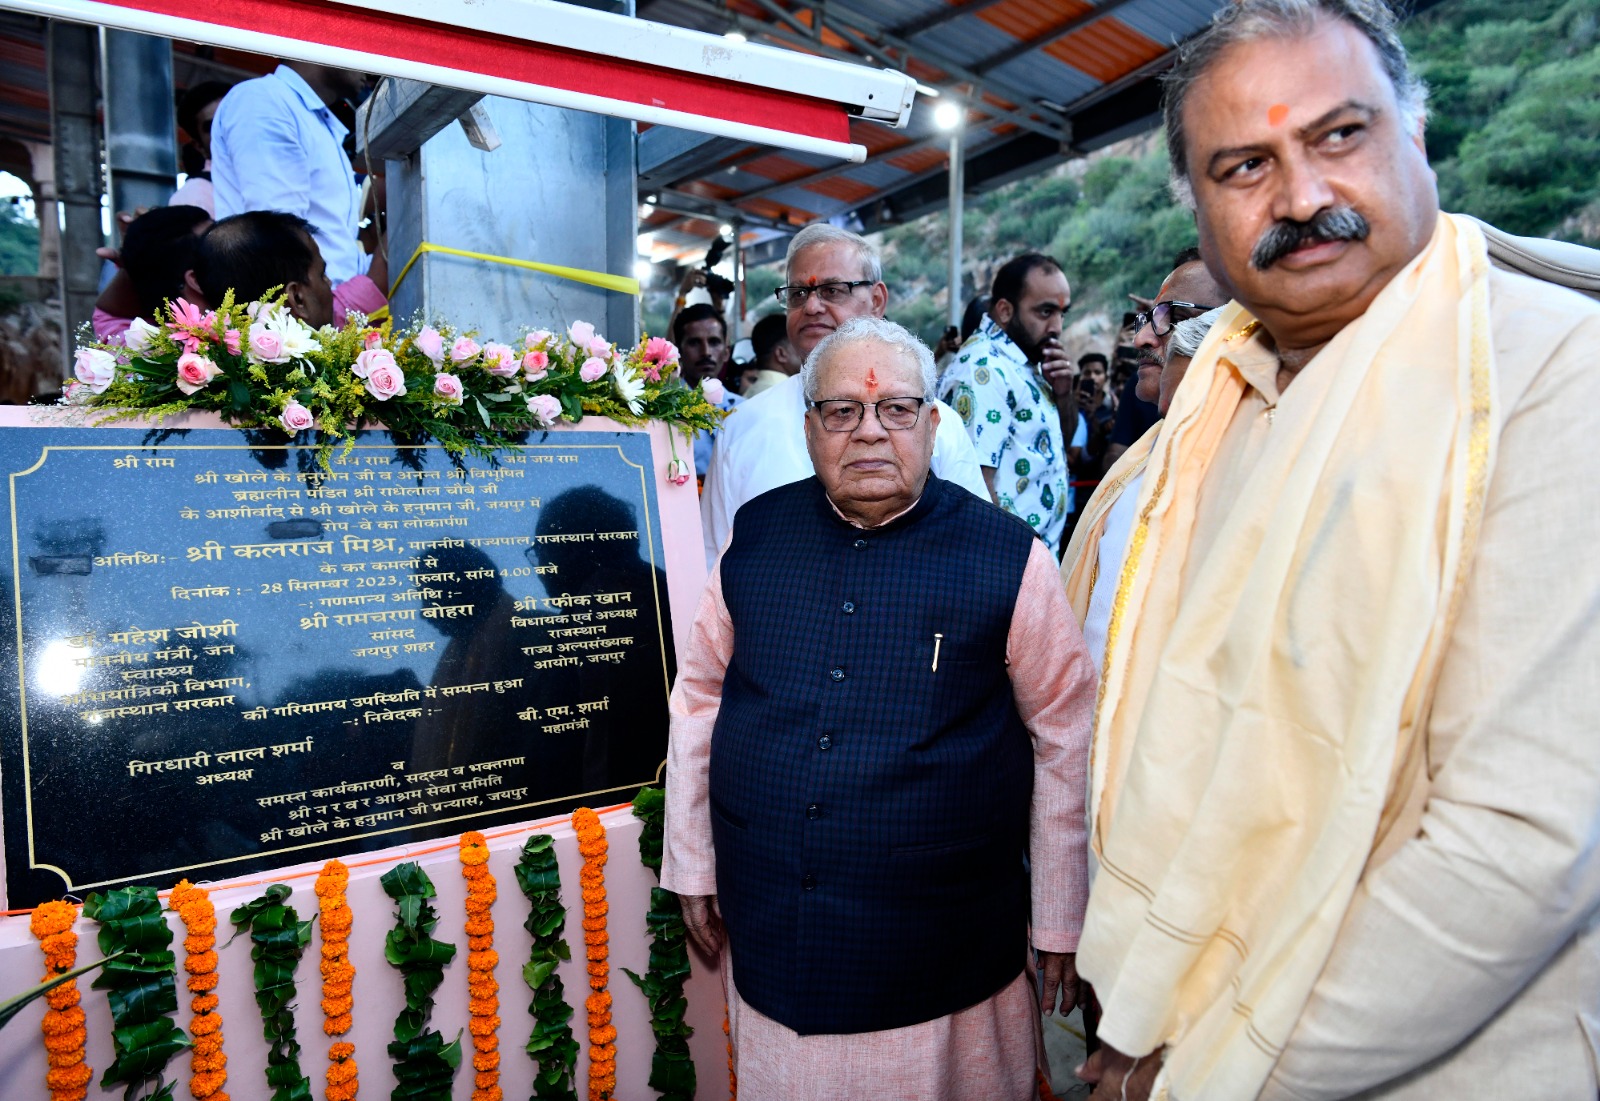 Hon'ble Governor has inugurated Ropeway at Shri Khole Ke Hanuman Ji Temple, Jaipur